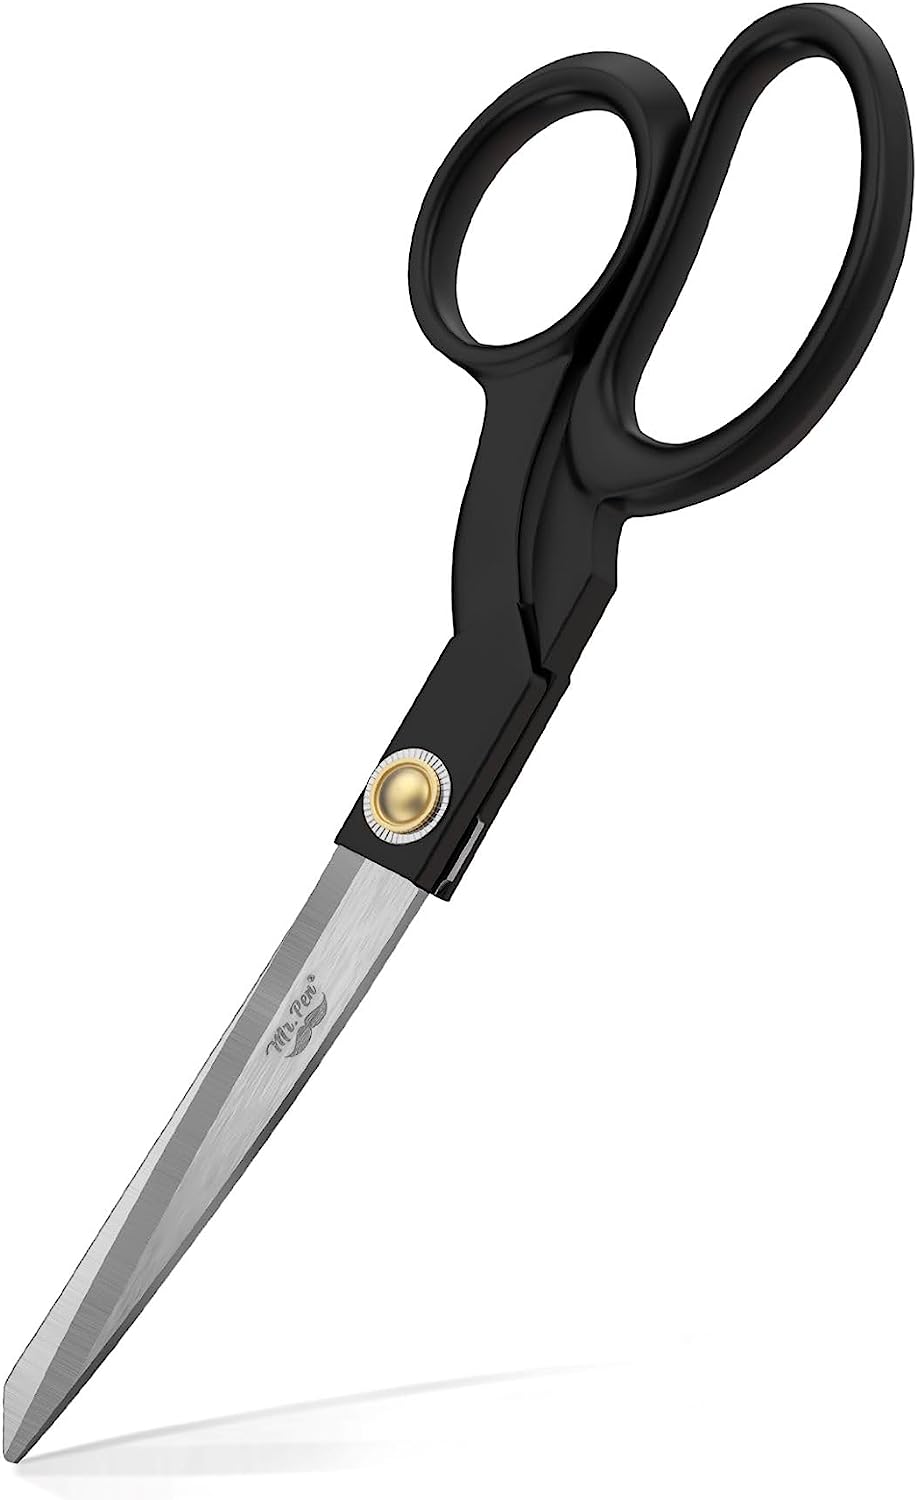 Fabric Scissors, 8-inch Black Premium Tailor Scissors, Sewing Scissors for Fabric  Cutting - Mr. Pen Store